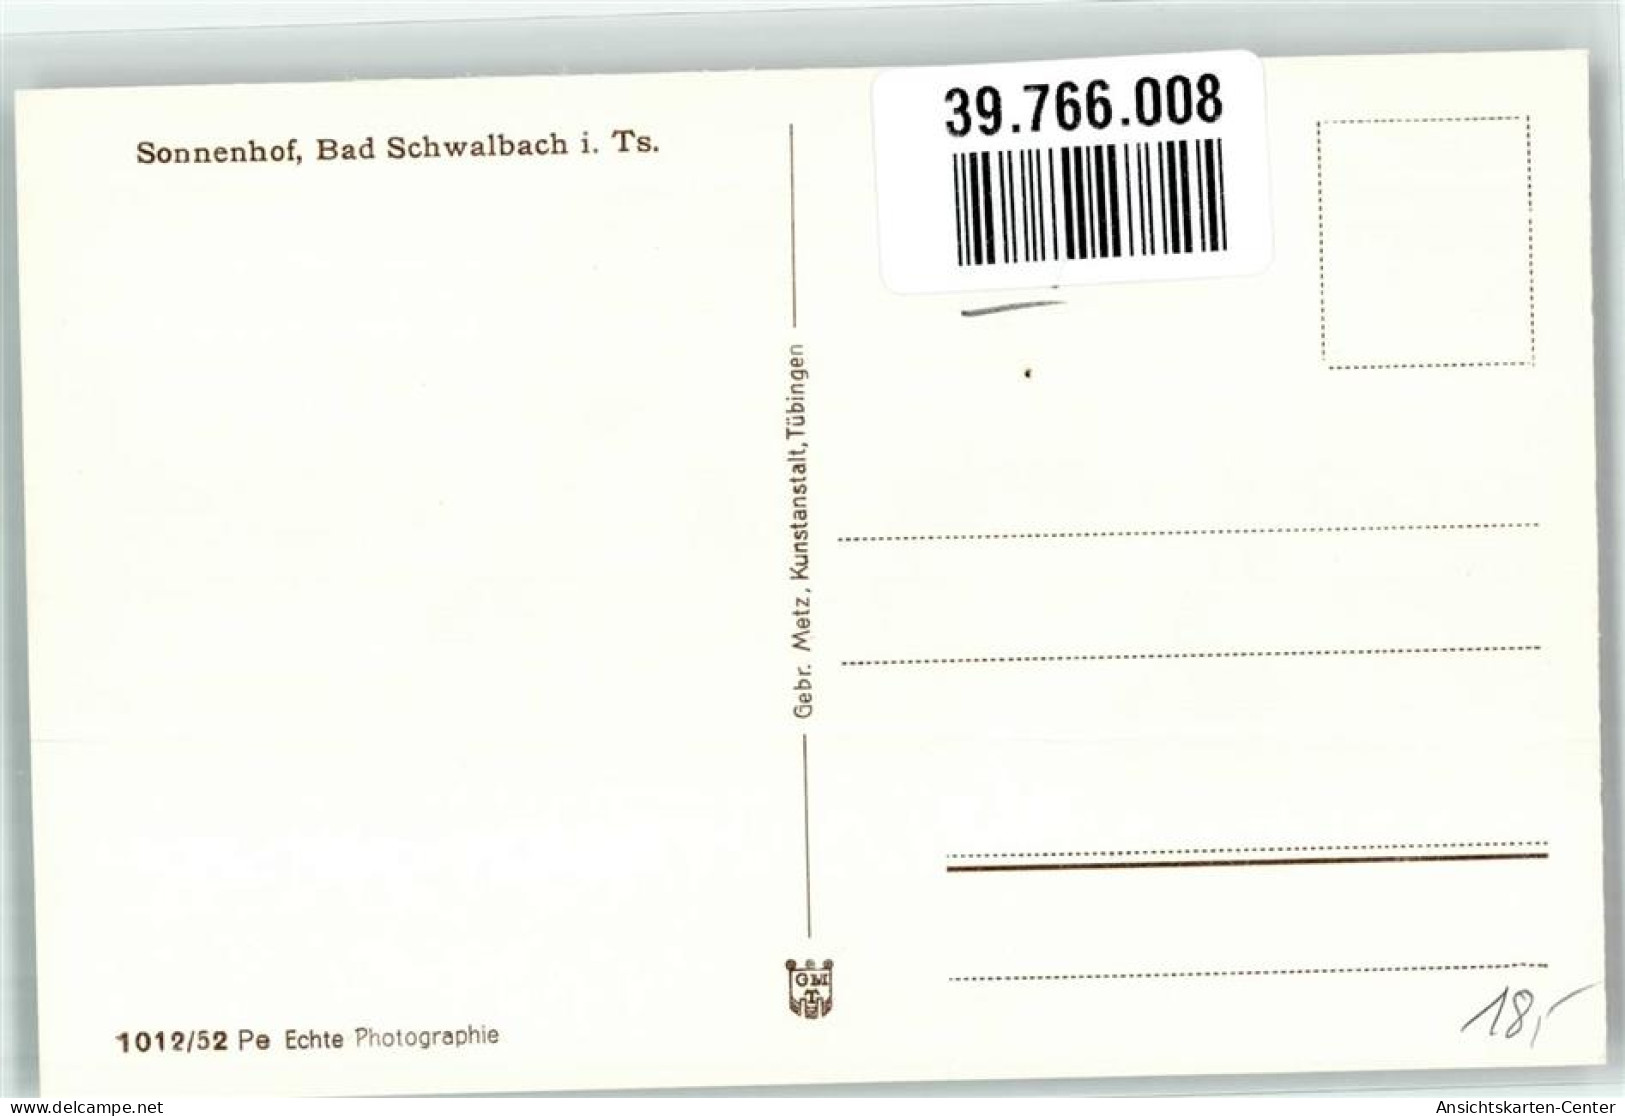 39766008 - Bad Schwalbach - Bad Schwalbach